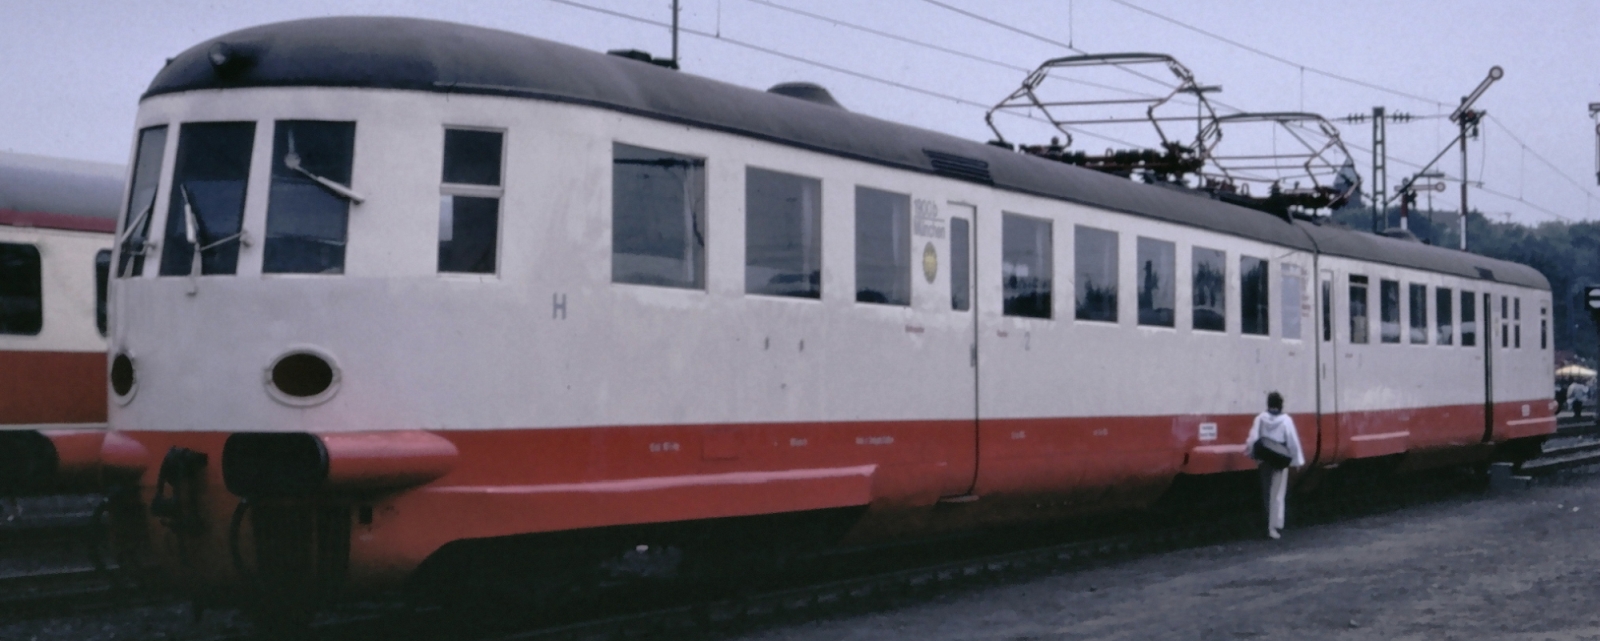 ET 11 01 in pre-war livery in October 1985 in Bochum-Dahlhausen